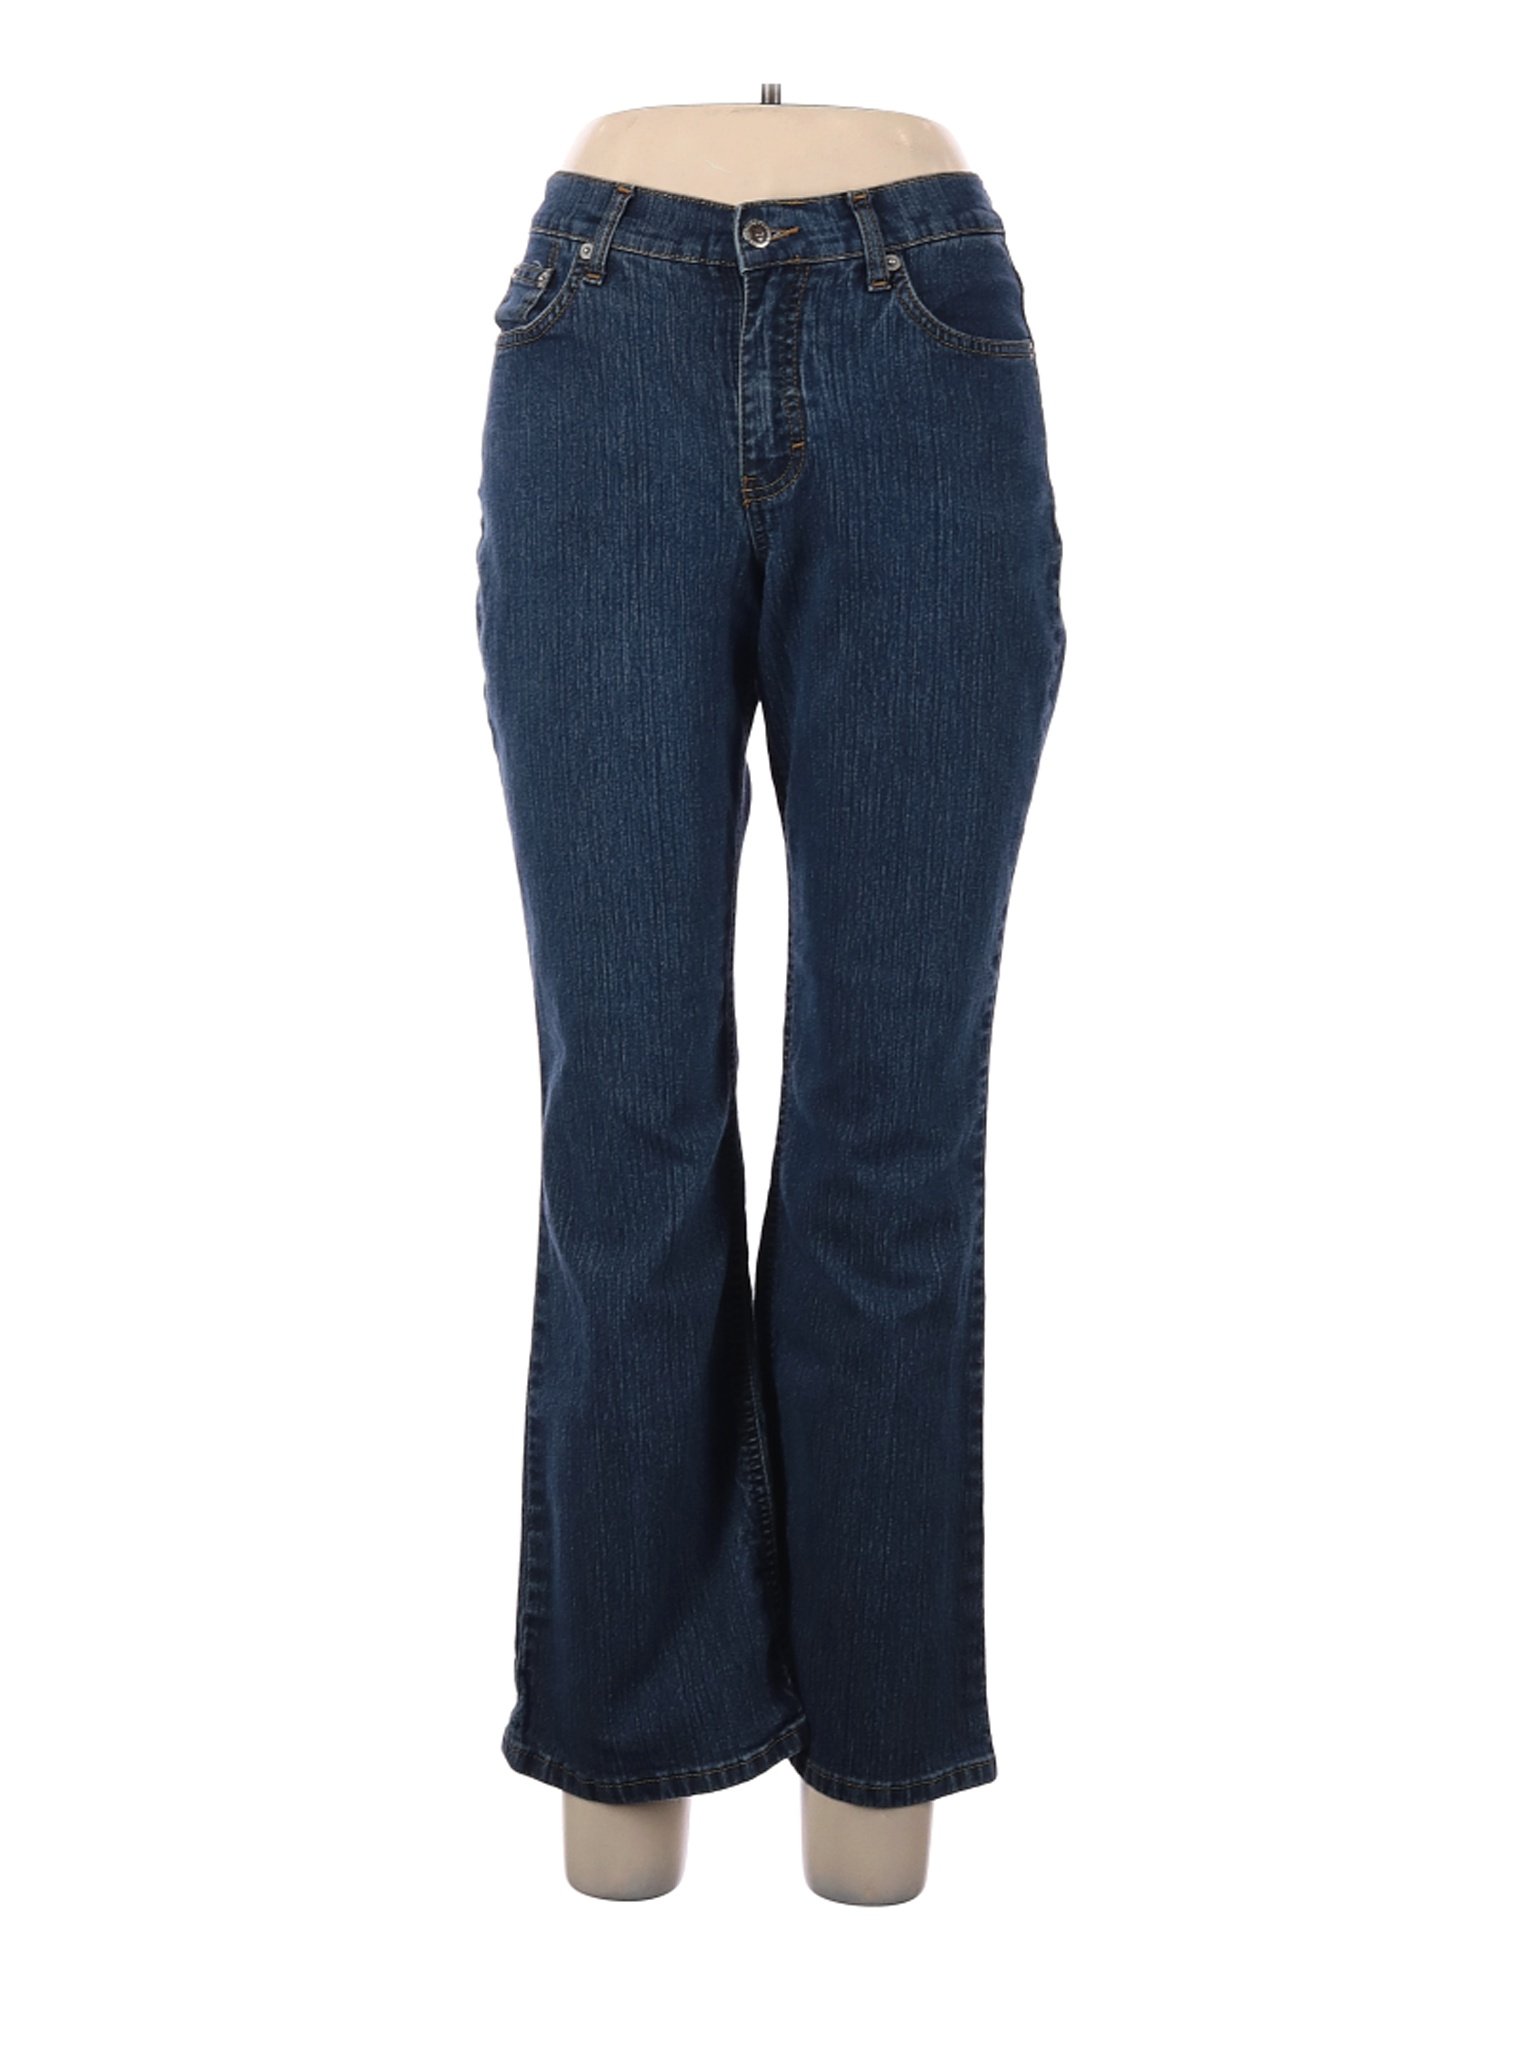 Duck Head Women Blue Jeans 10 Petites | eBay